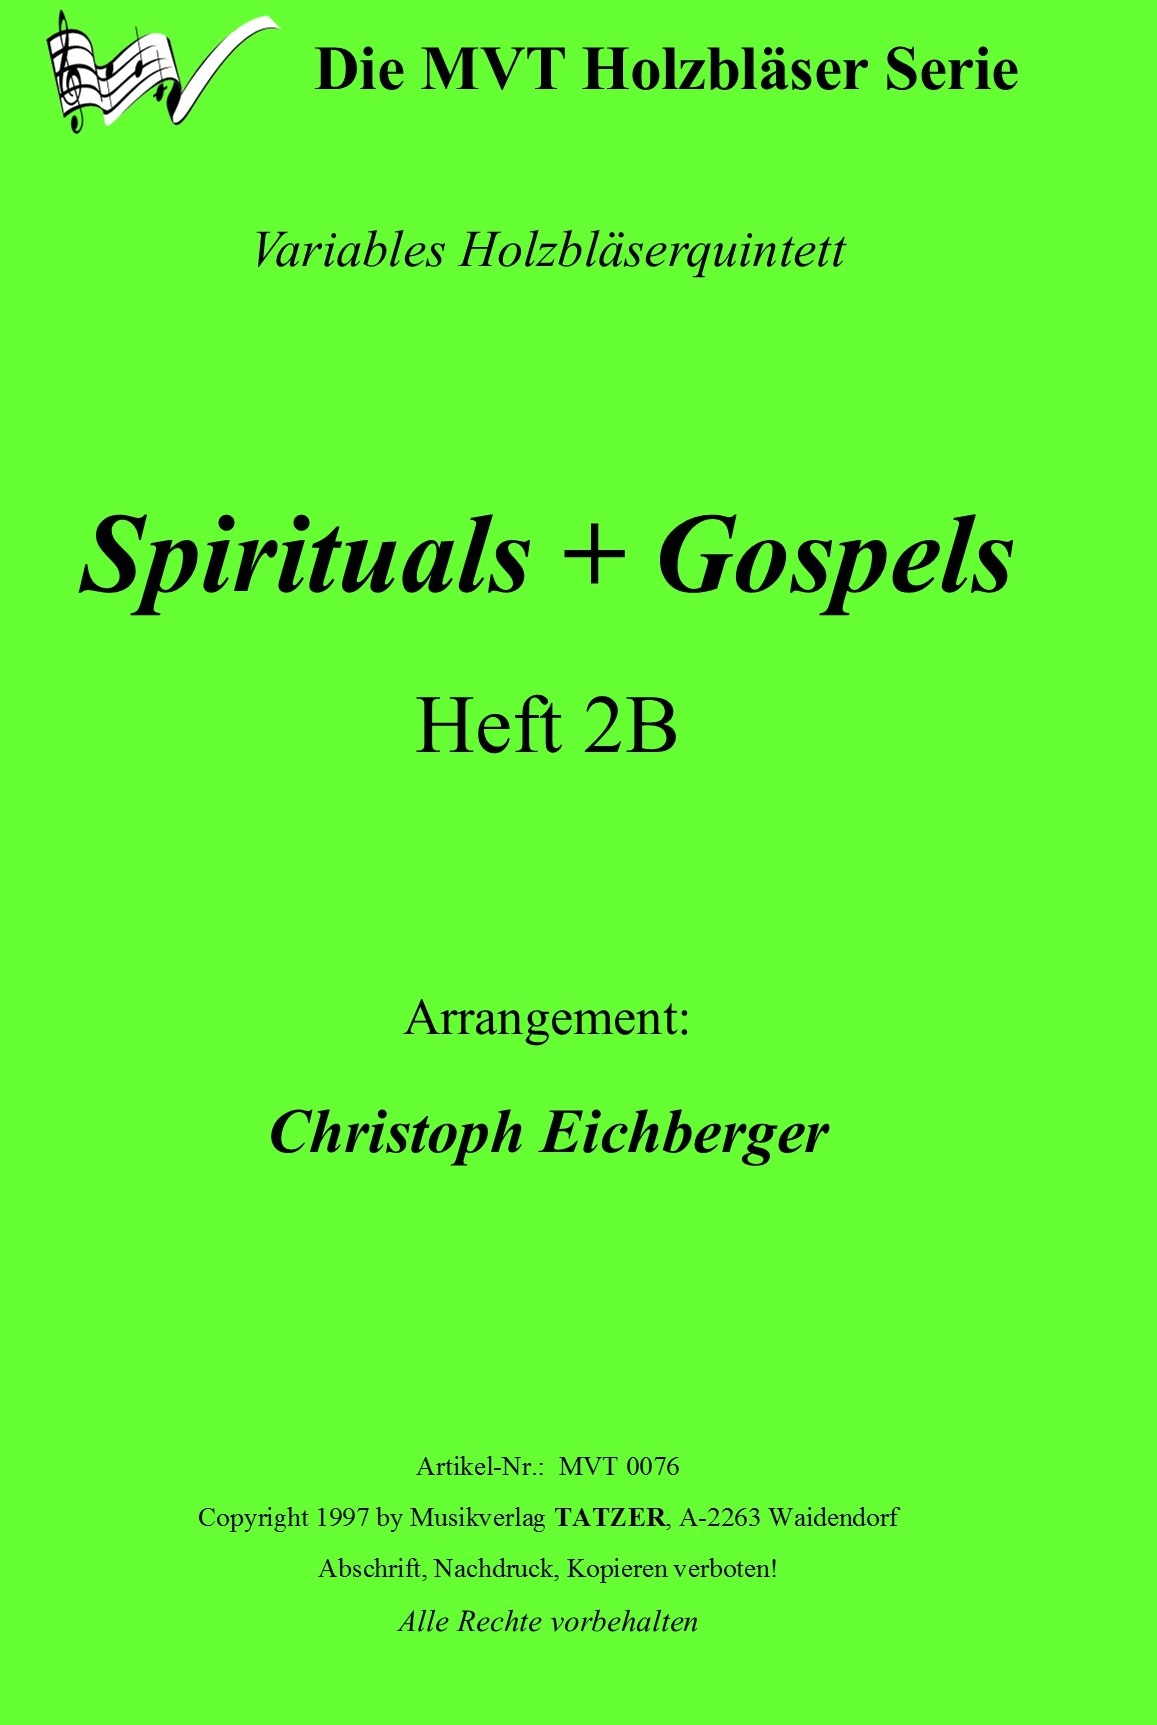 Gospels + Spirituals 2B (A-B), Christoph Eichberger